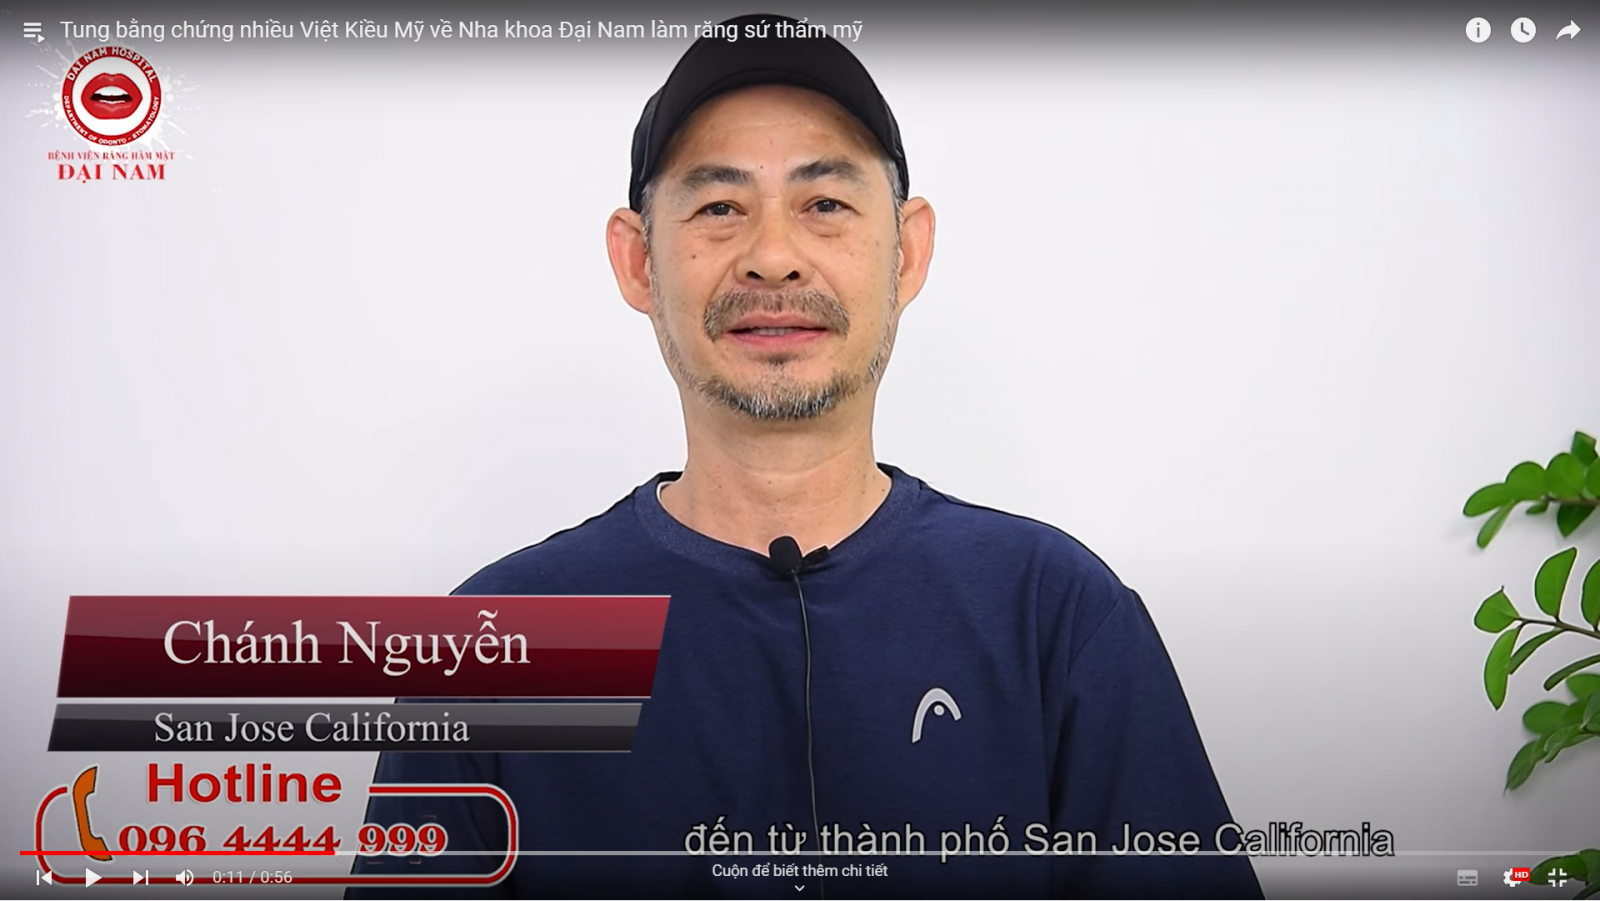 Anh Chánh Nguyễn (Việt Kiều Mỹ) đến từ thành phố San Jose California về Đại Nam làm răng